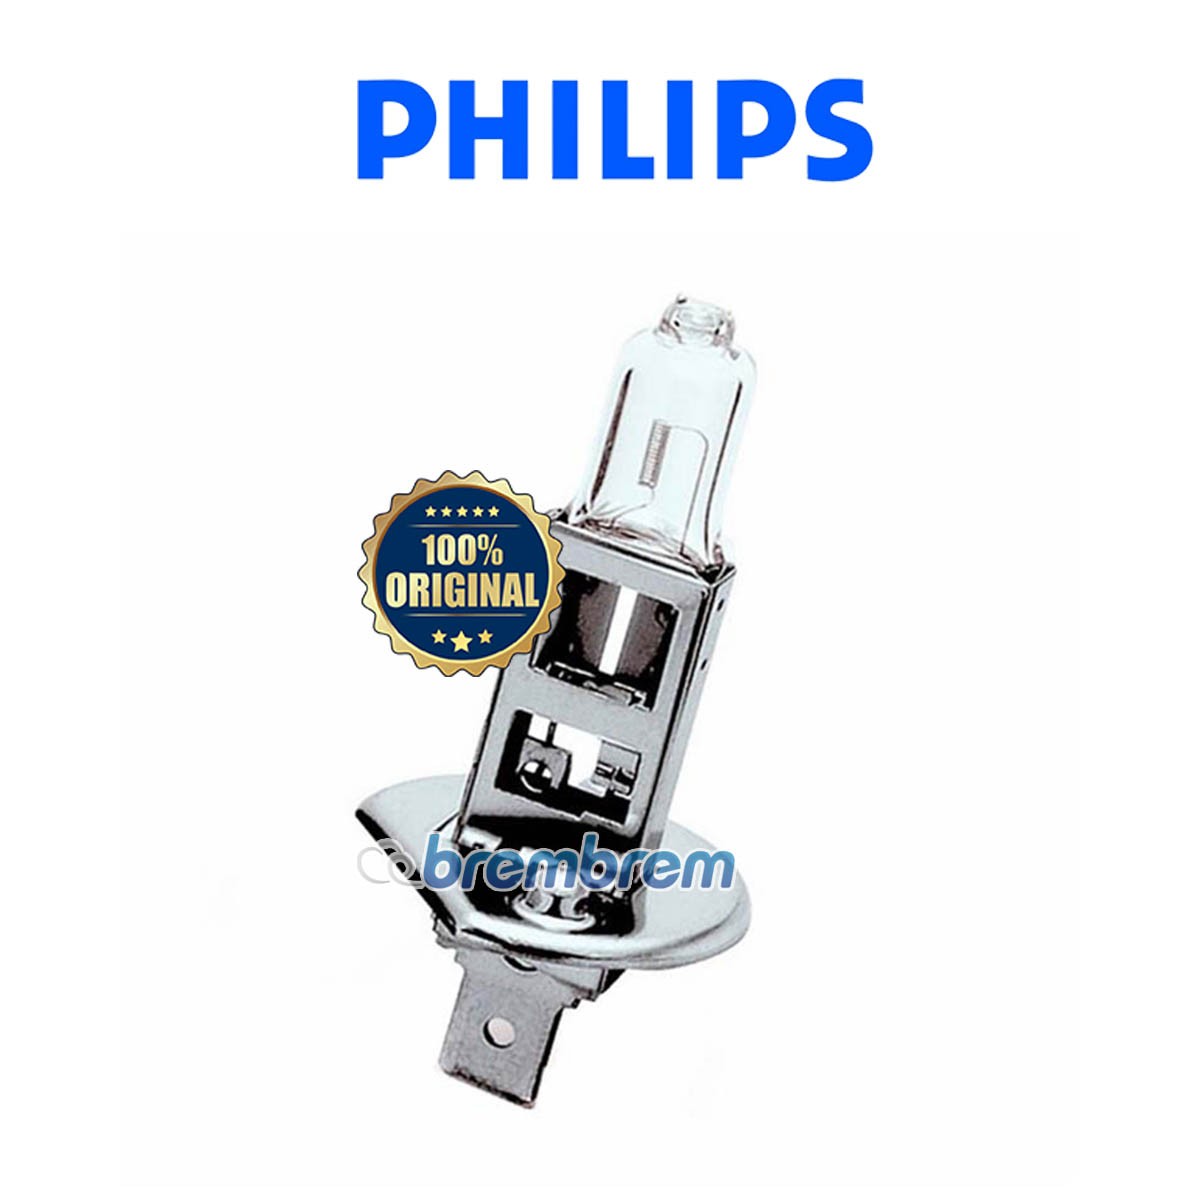 PHILIPS PREMIUM VISION H1 - LAMPU HALOGEN